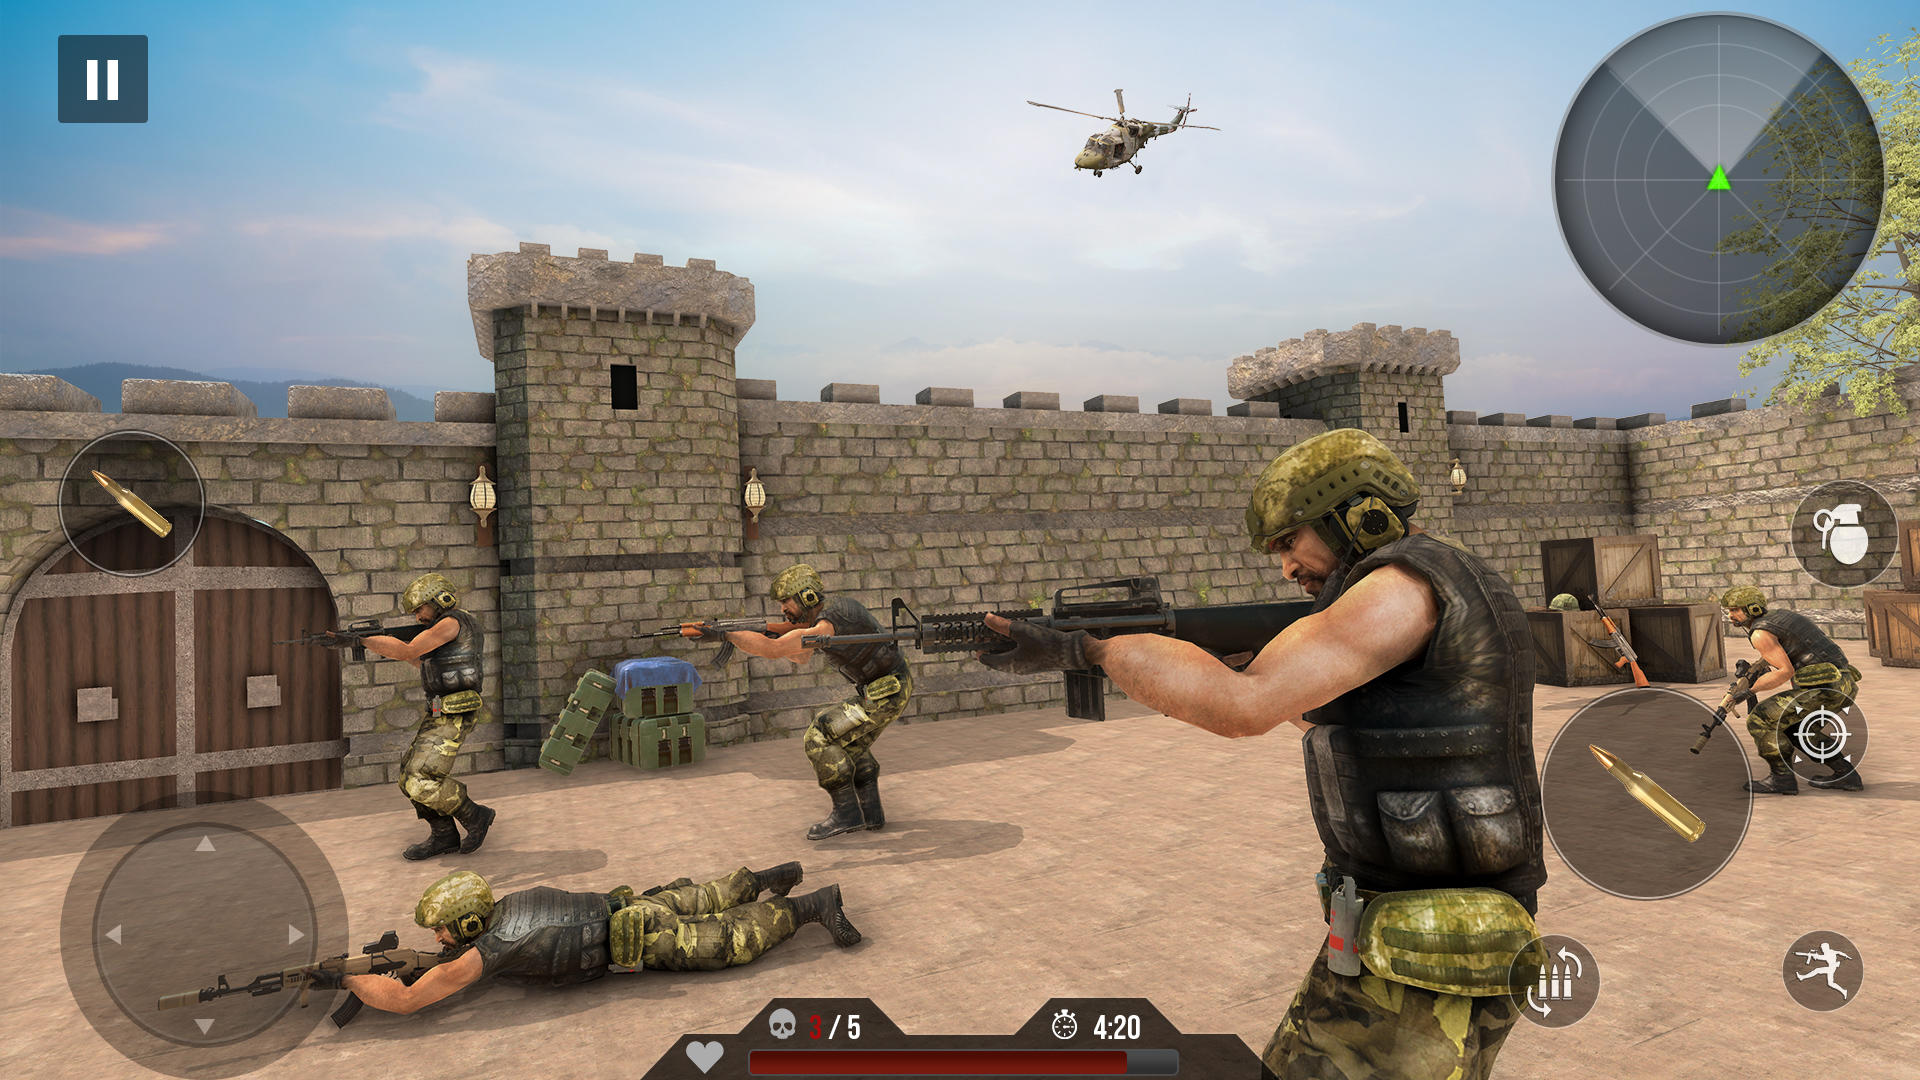 Screenshot 1 of jogos de armas: jogos de tiro 2.0.29